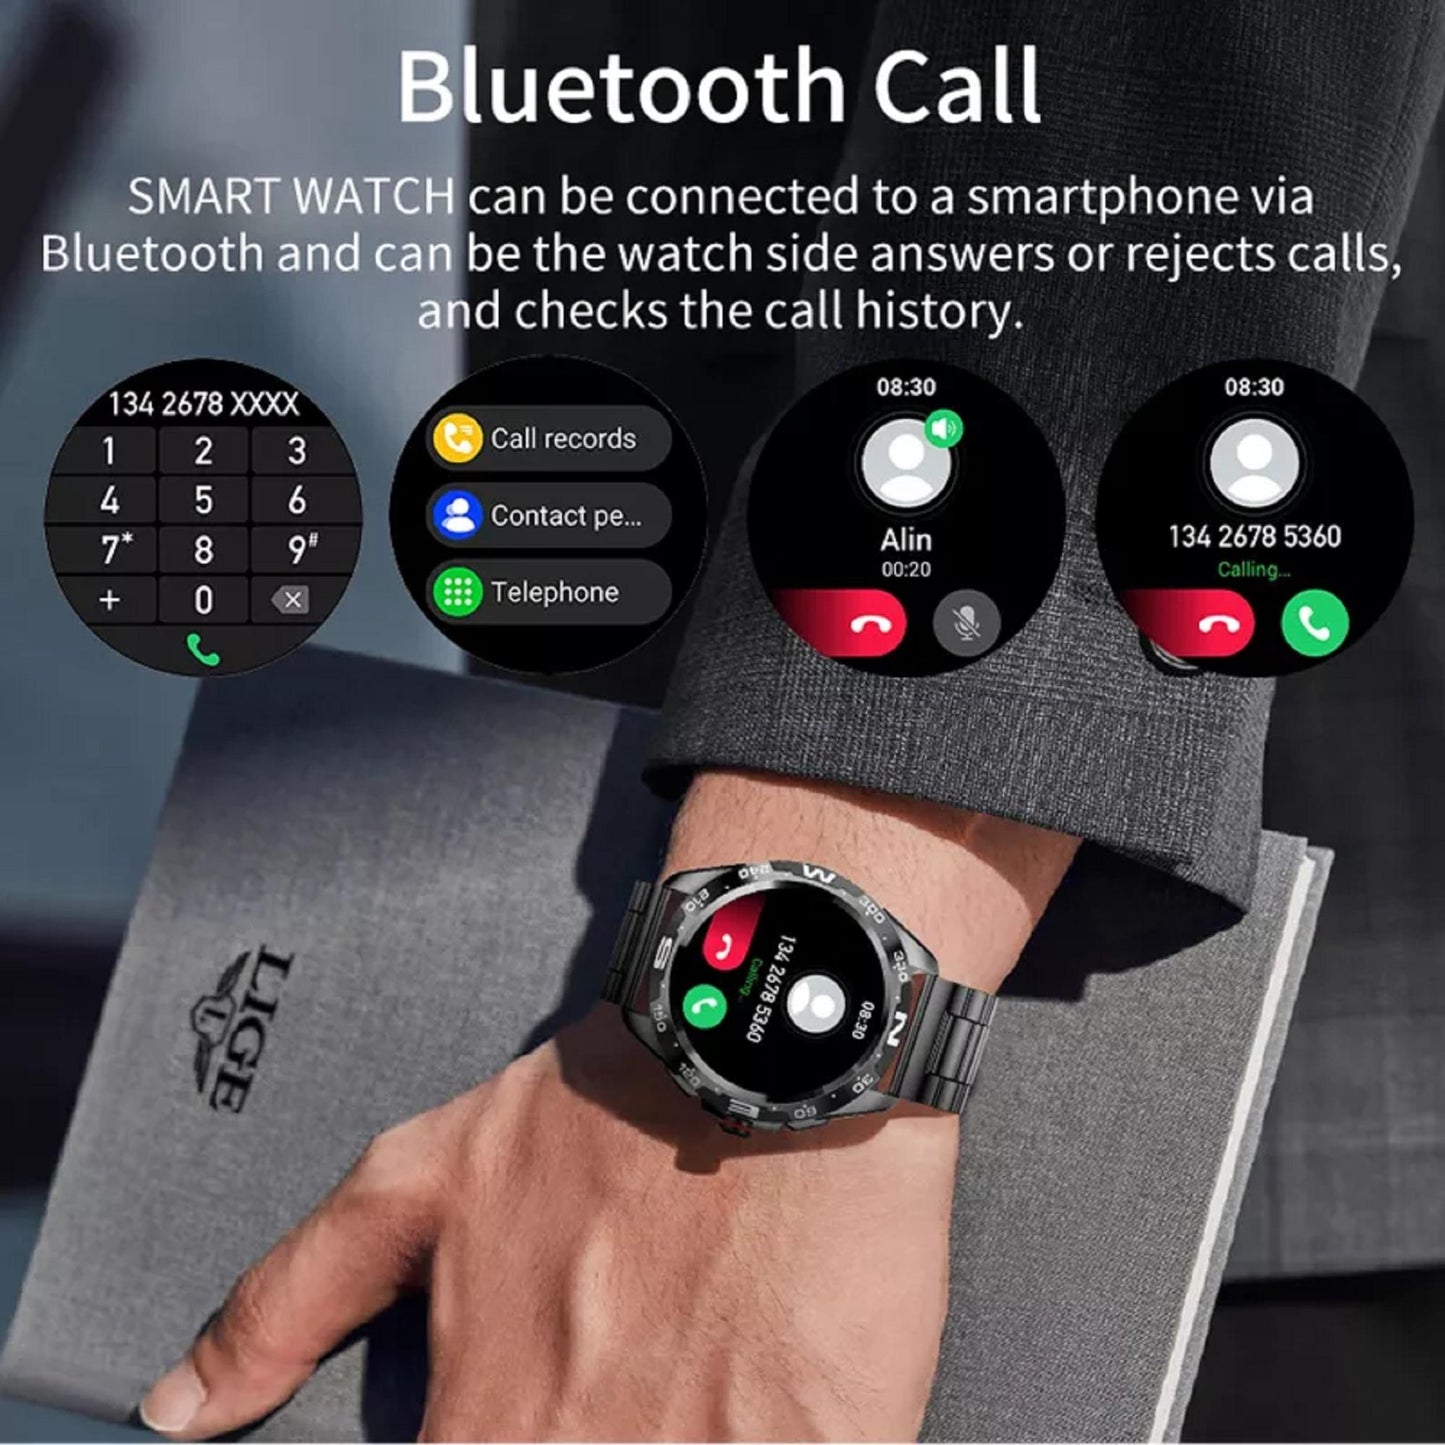 Robustes Design mit IP67-Bewertung gewährleistet Langlebigkeit für die Lige BW0327 Smartwatch. | Blue Chilli Electronics.